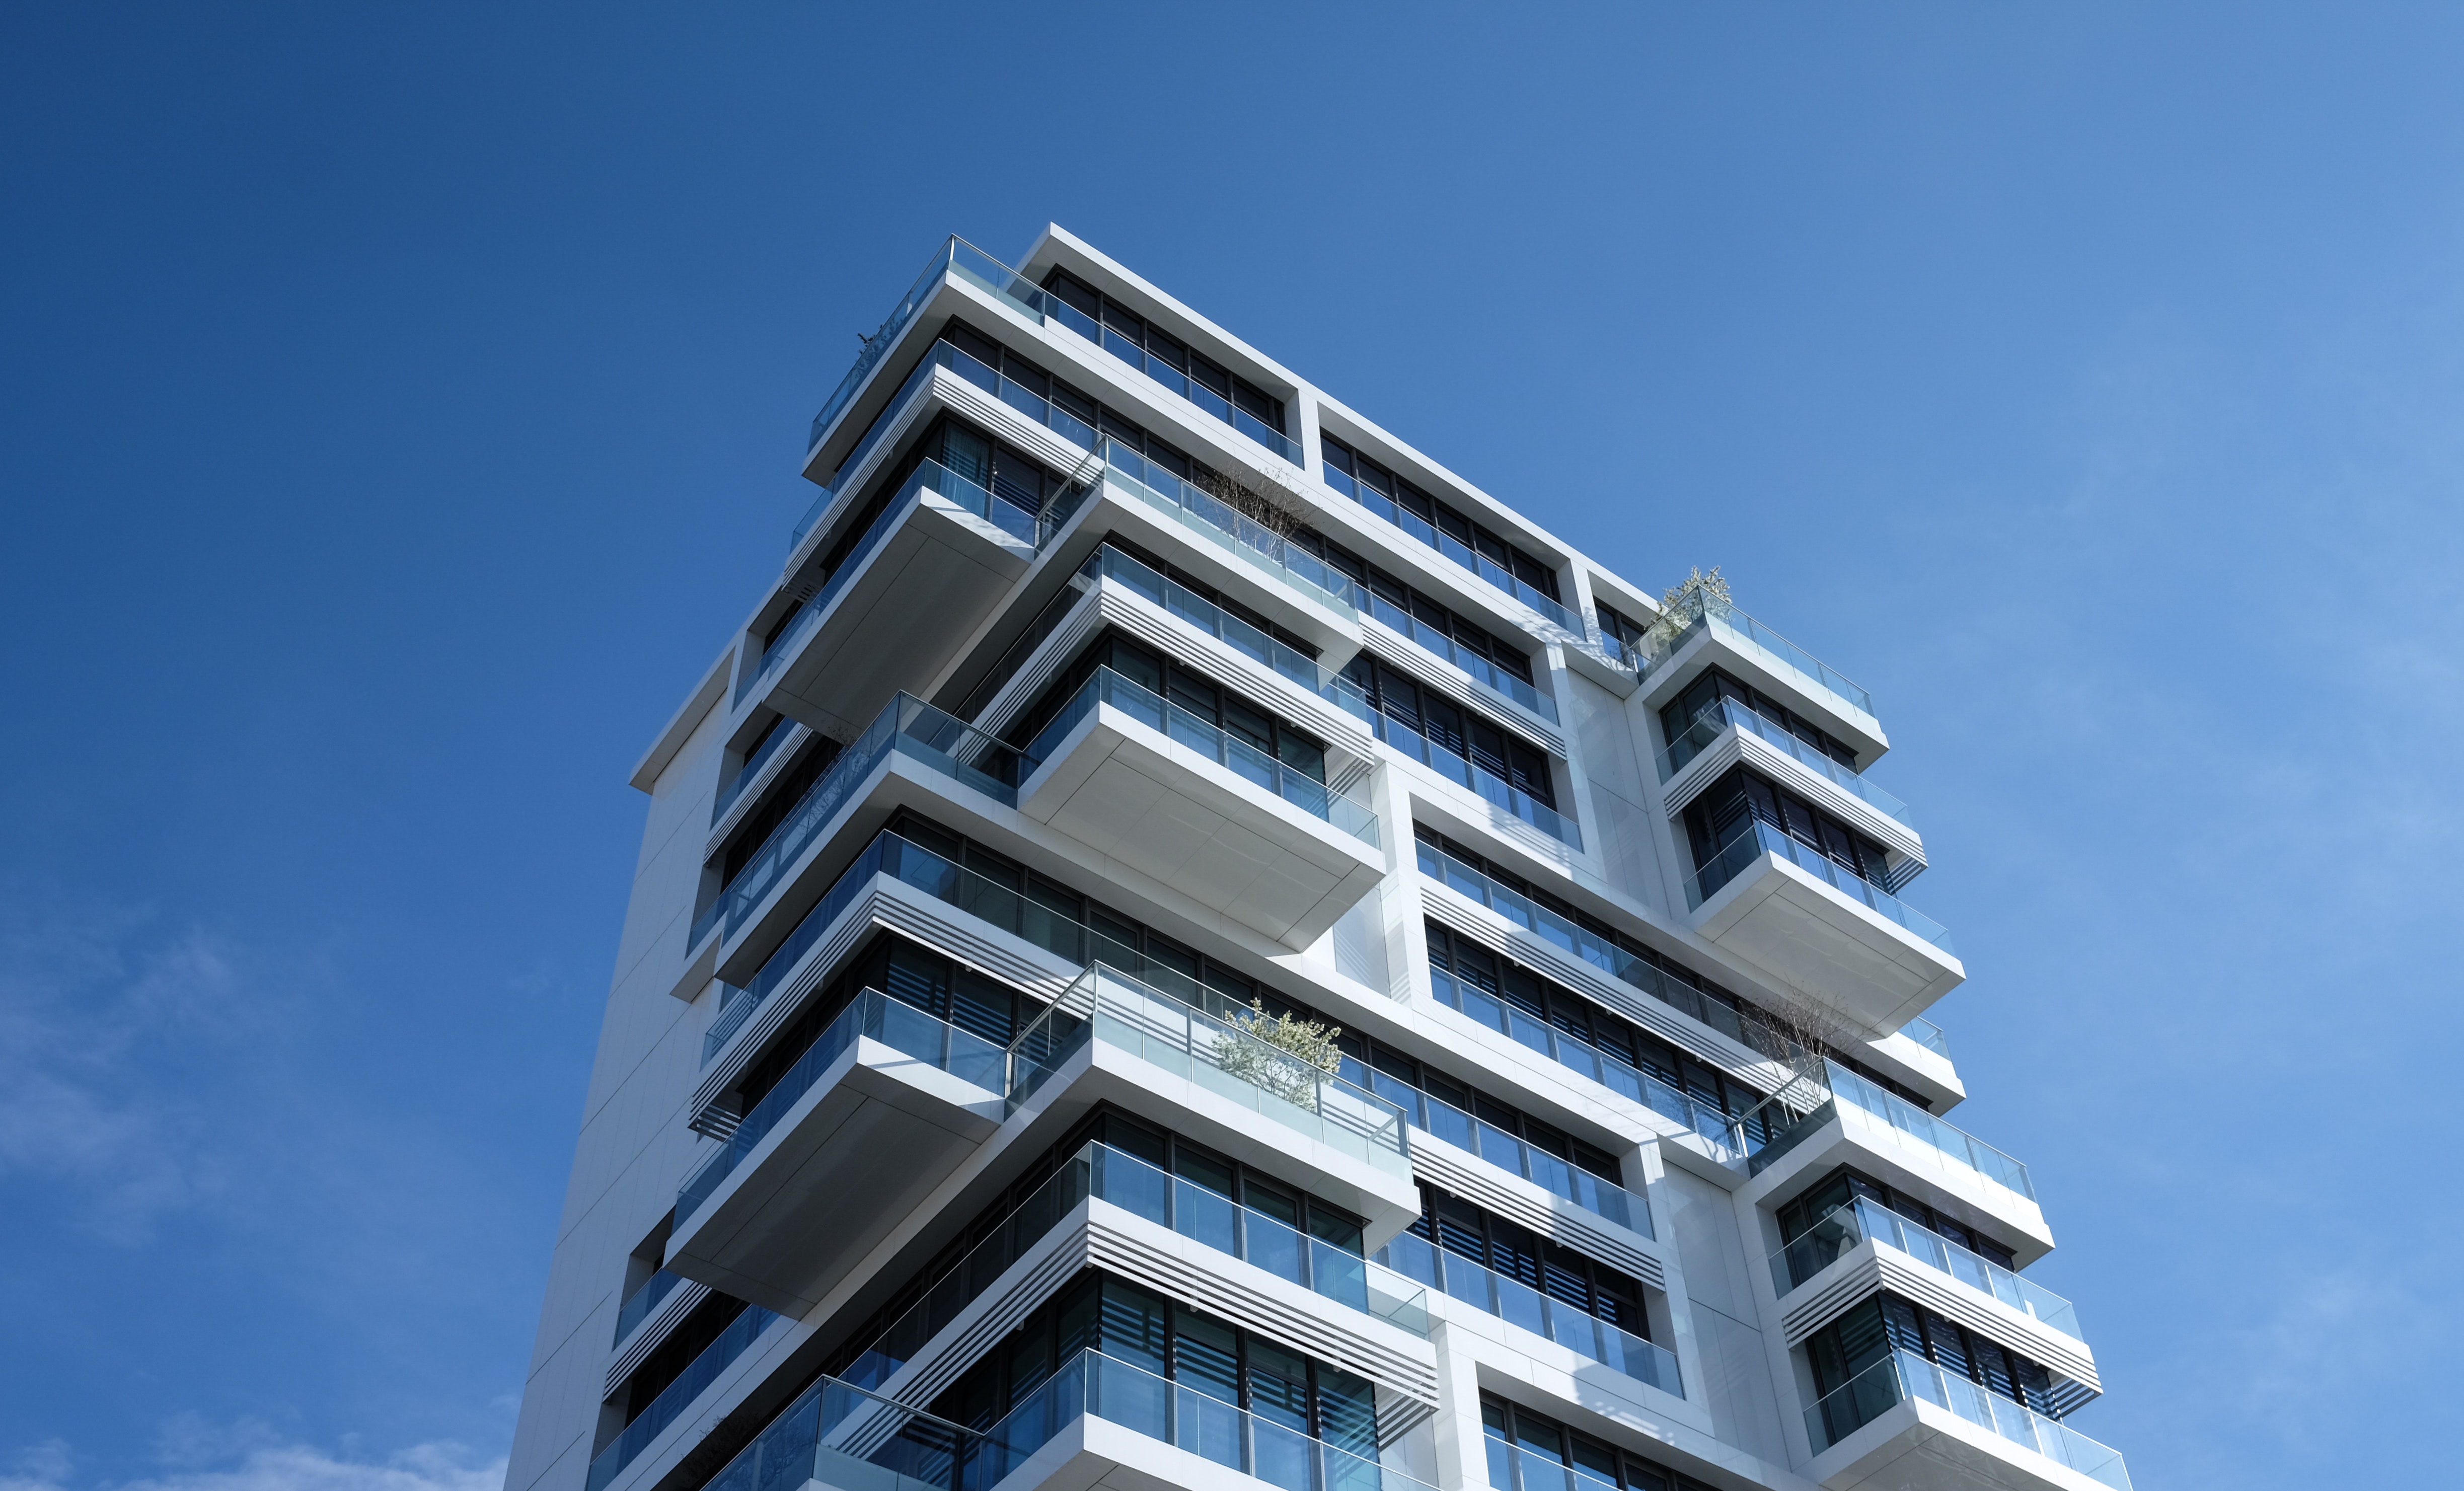 Ein neues Wohngebäude mit zahlreichen Balkonen ragt in den blauen Himmel. Im Beitrag geht es um Ablösen bei Genossenschaftswohnungen.